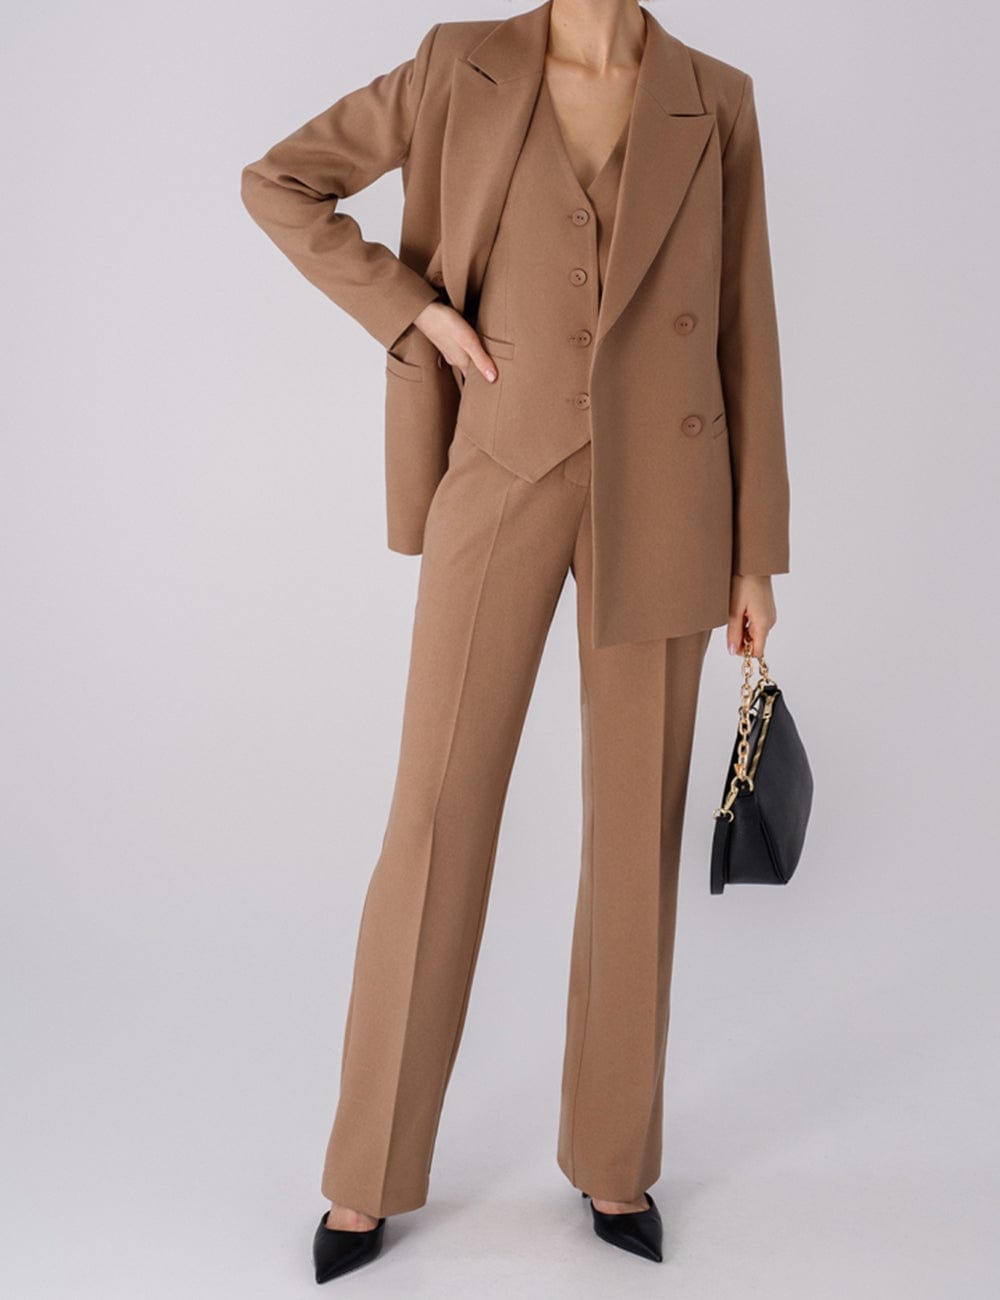 solovedress Women Suit 3Piece Stylish Slim Fit Peak Lapel Biazer (Blazer+Vest+Pants)